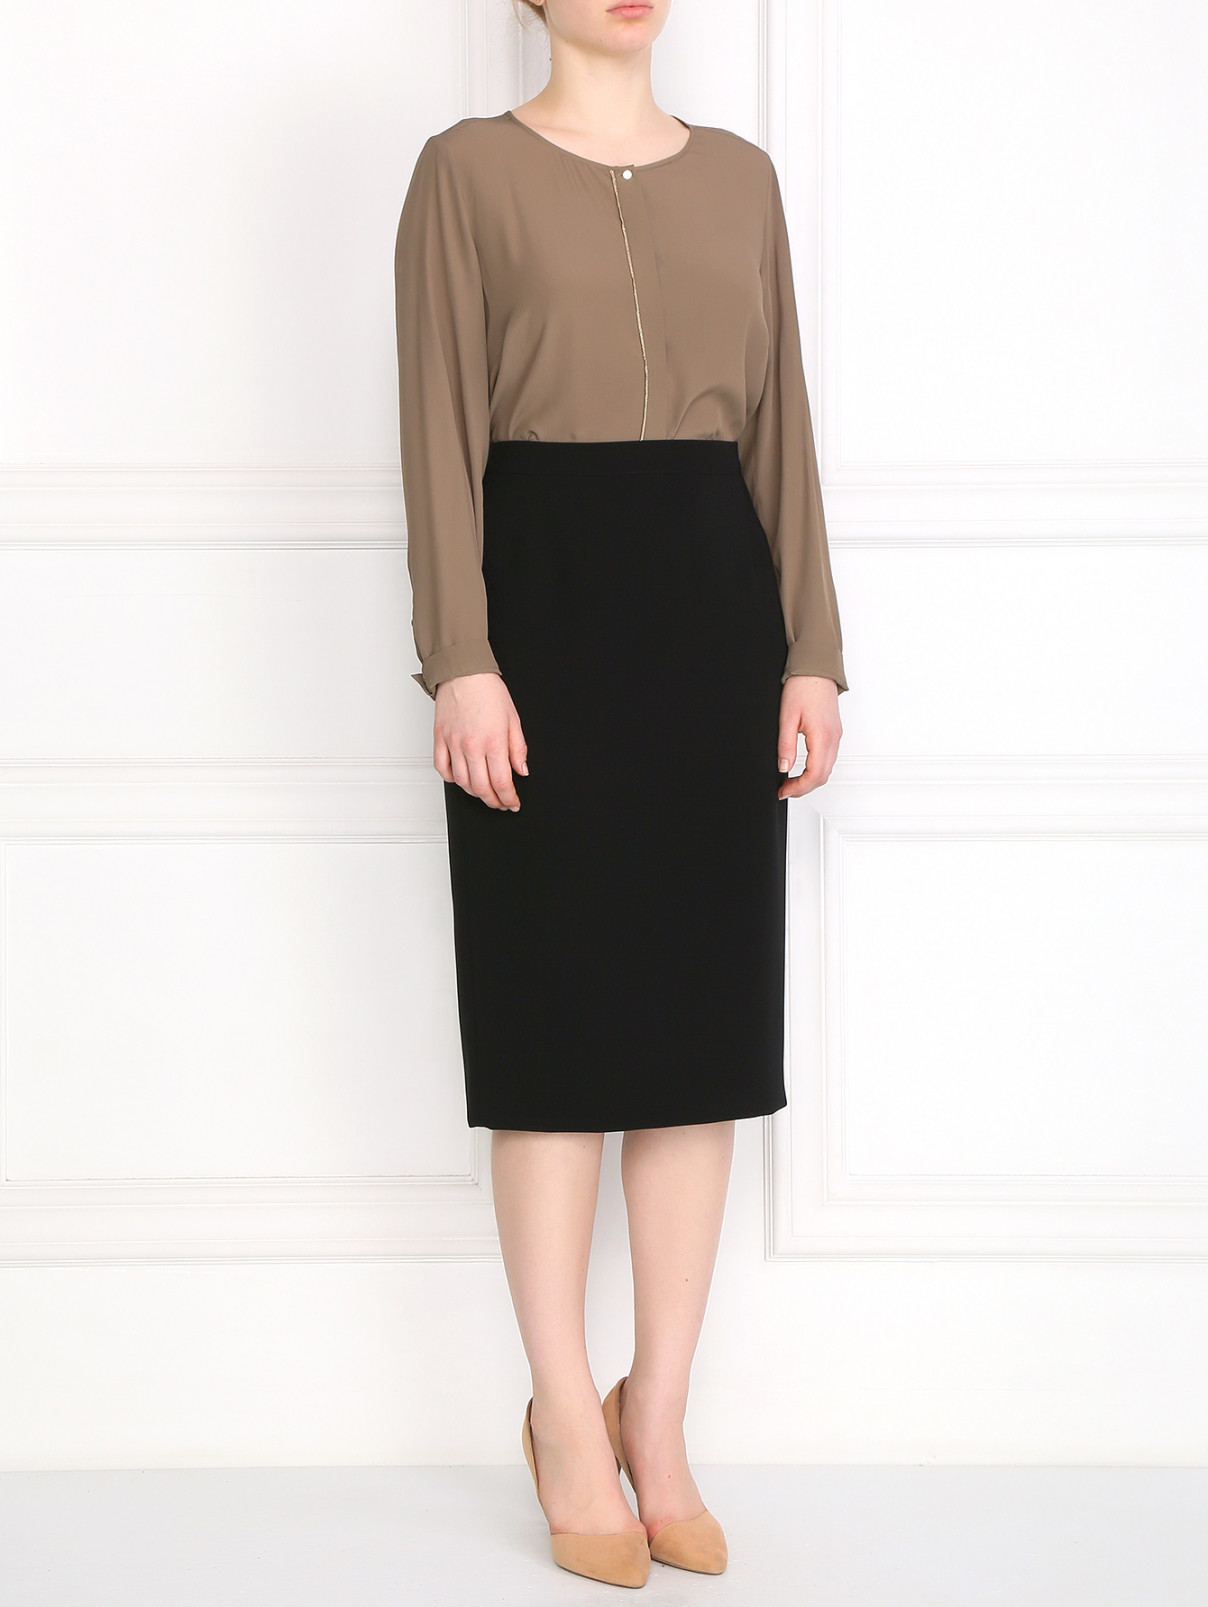 Блуза с декоративной вставкой Marina Rinaldi  –  Модель Общий вид  – Цвет:  Зеленый